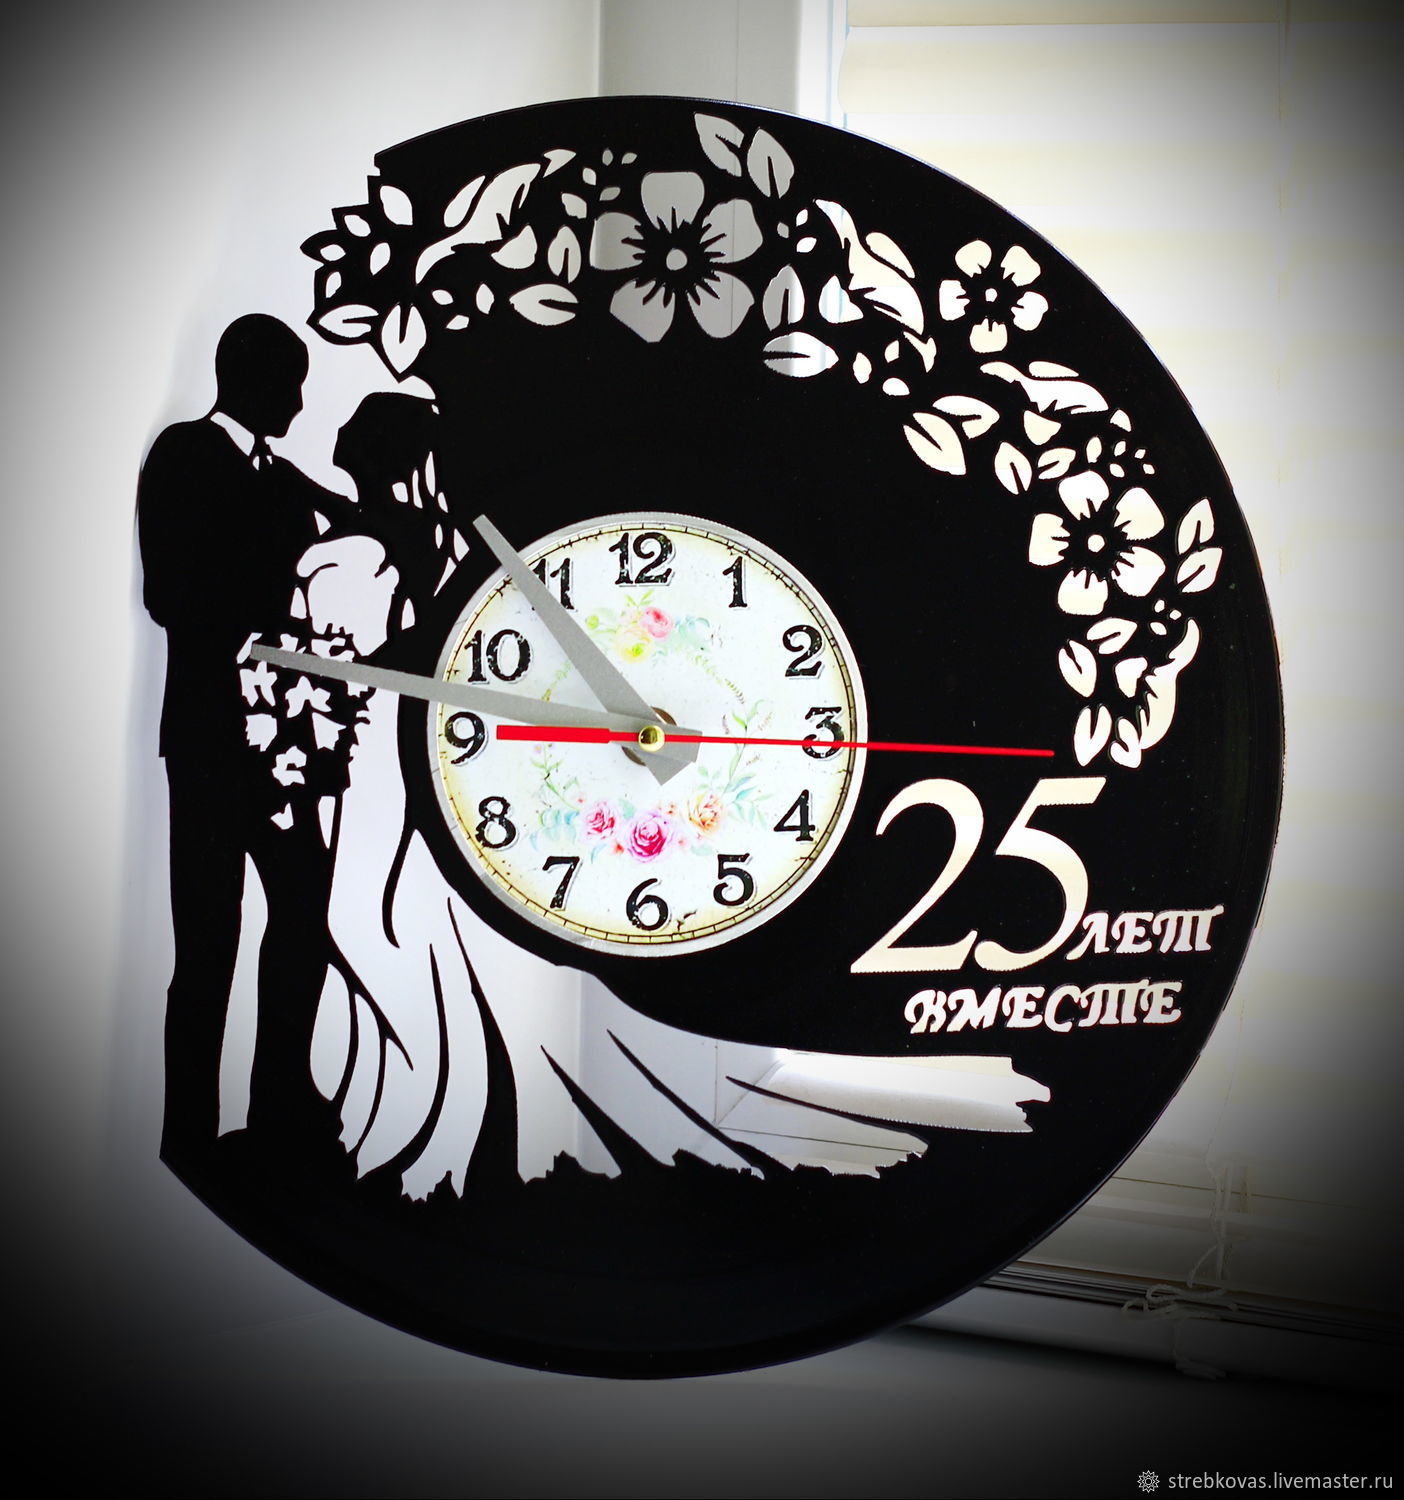 25 часов вместе. Часы swimming настенные. Часы настенные на годовщину свадьбы марахановы. Дизайн из виниловых пластинок на стене. Часы для плавания.